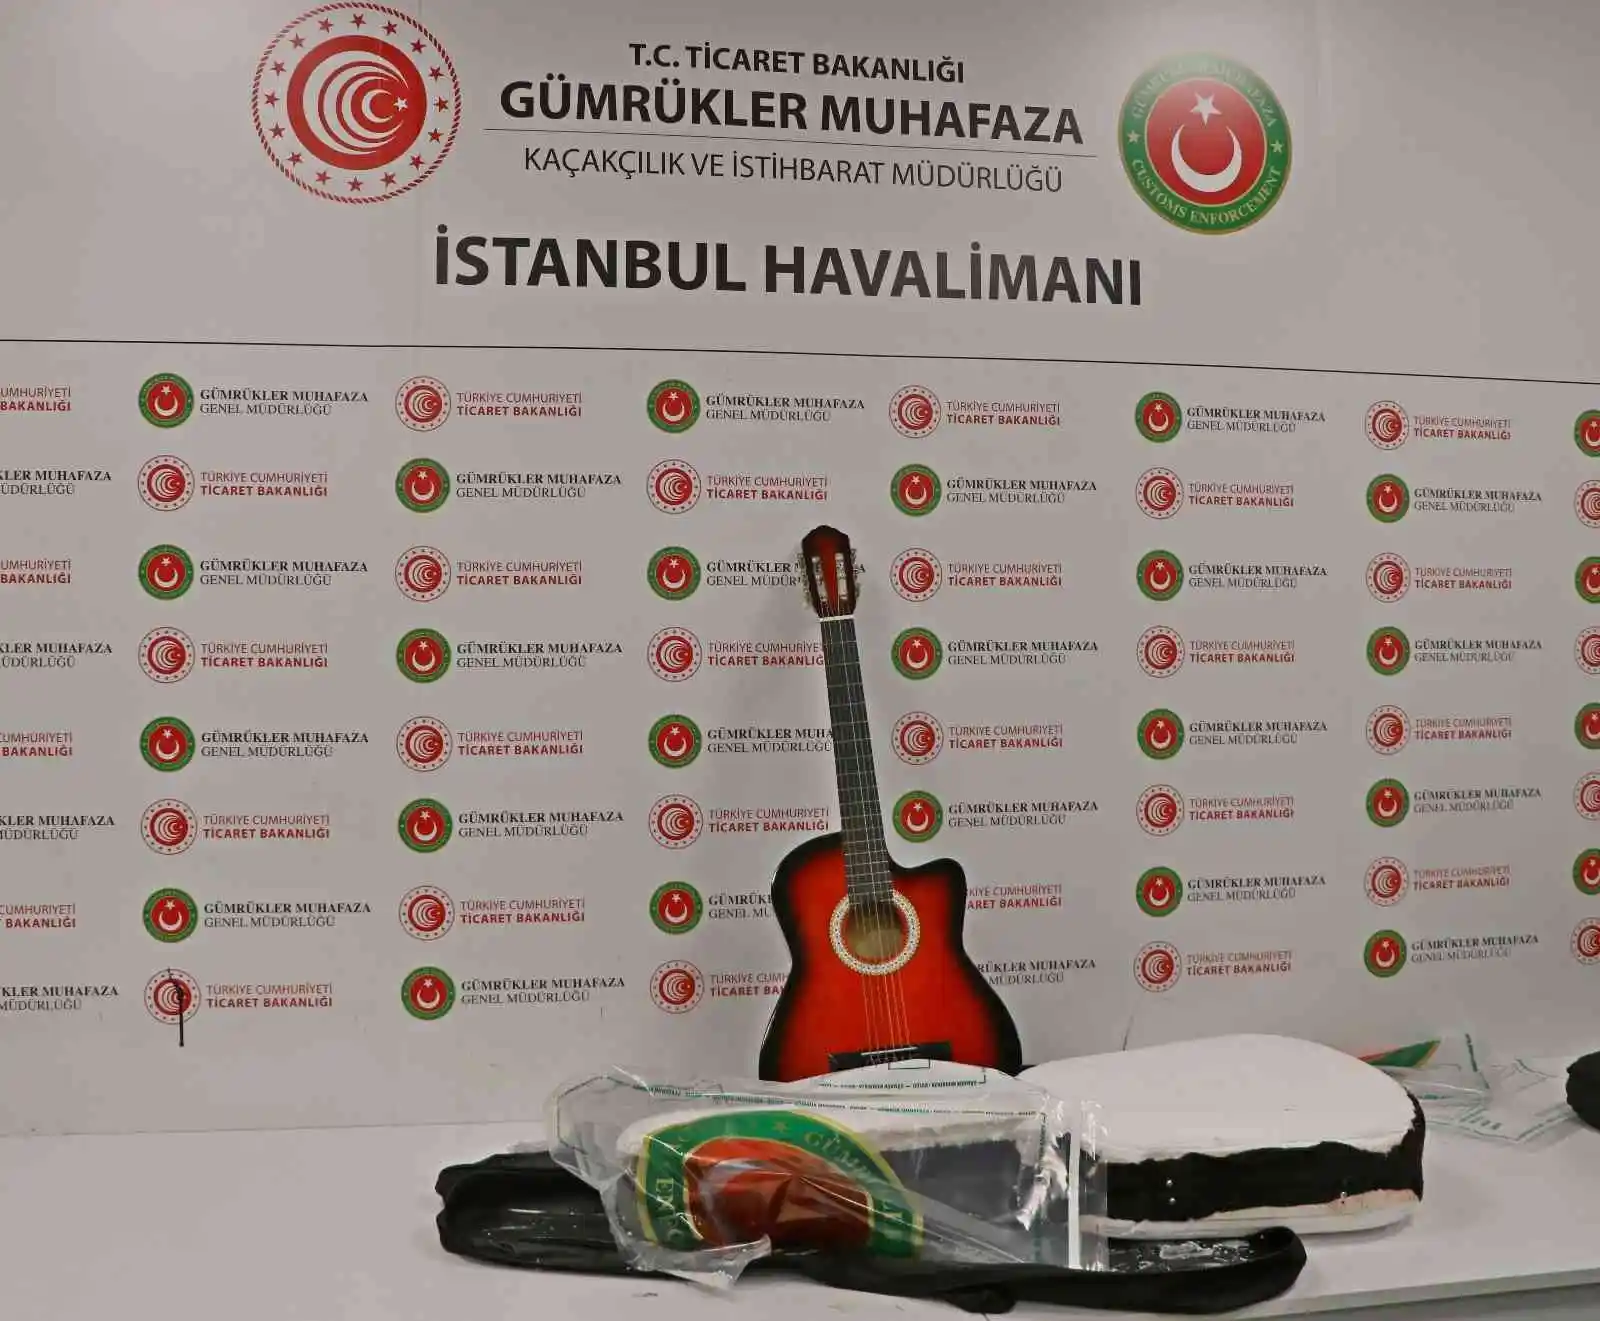 İstanbul Havalimanı'nda uyuşturucu operasyonları: Gitar kılıfından ve terlik tabanından uyuşturucu çıktı
, İSTANBUL haberleri